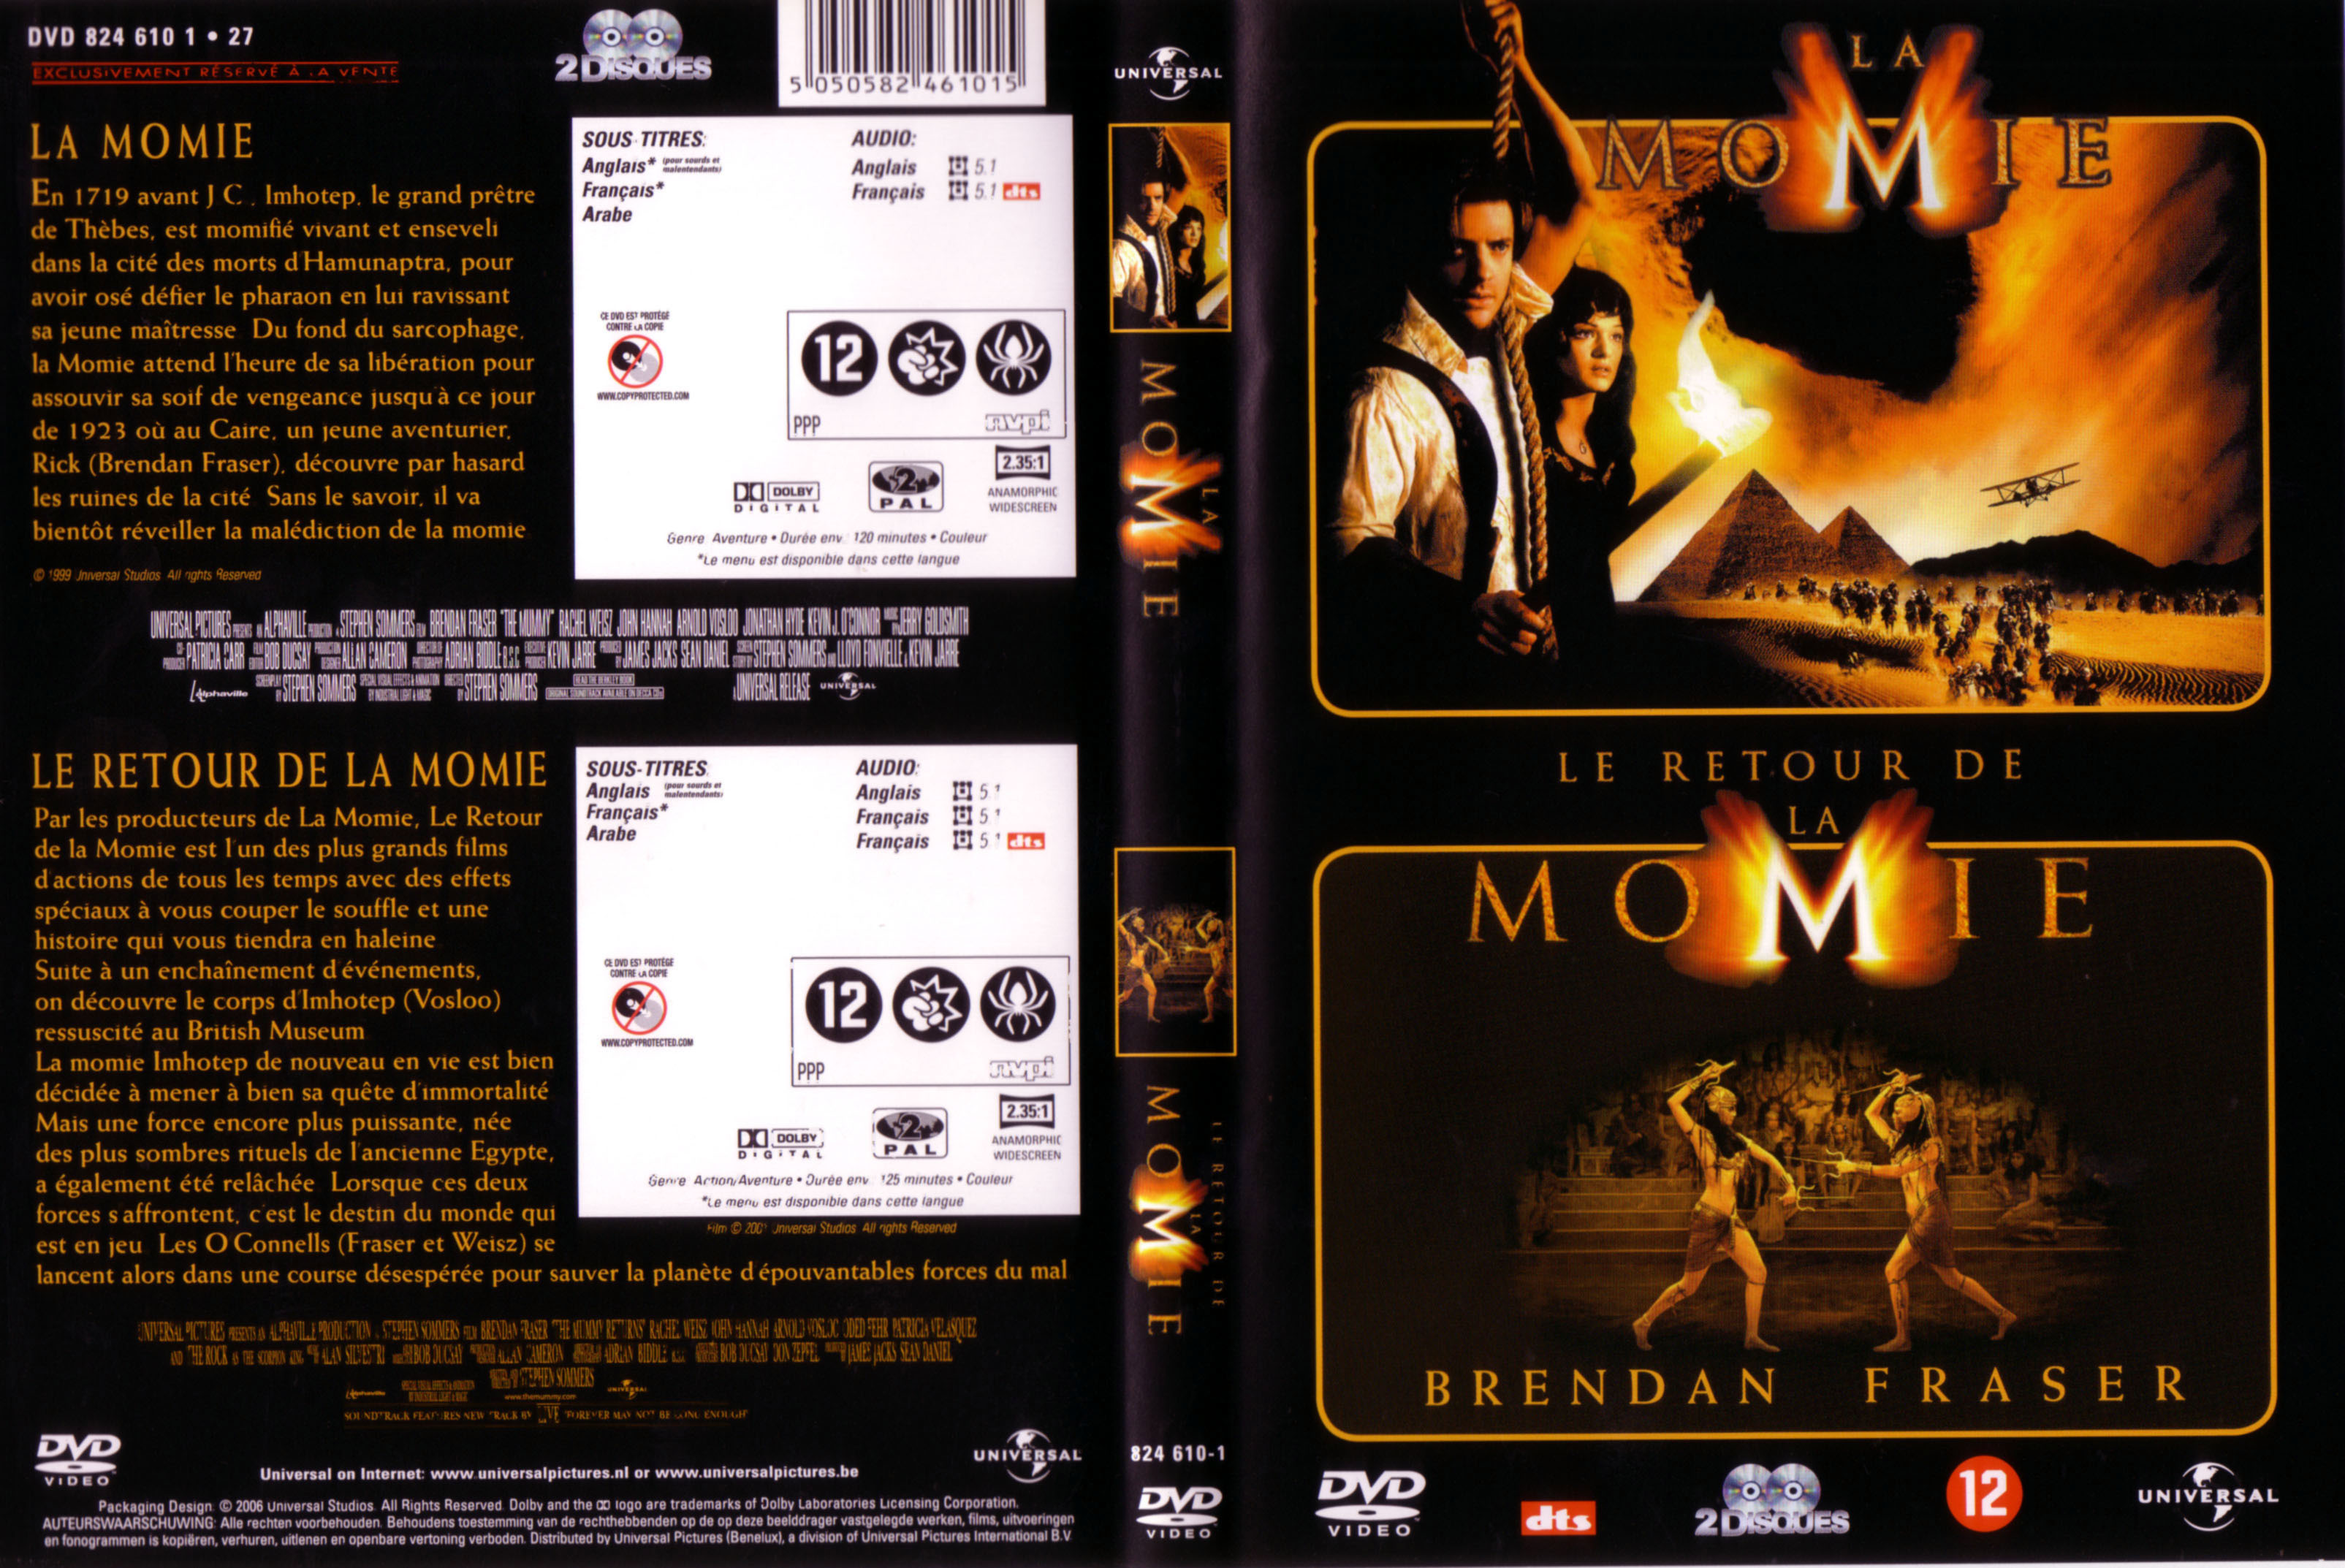 Jaquette DVD La momie + Le retour de la momie